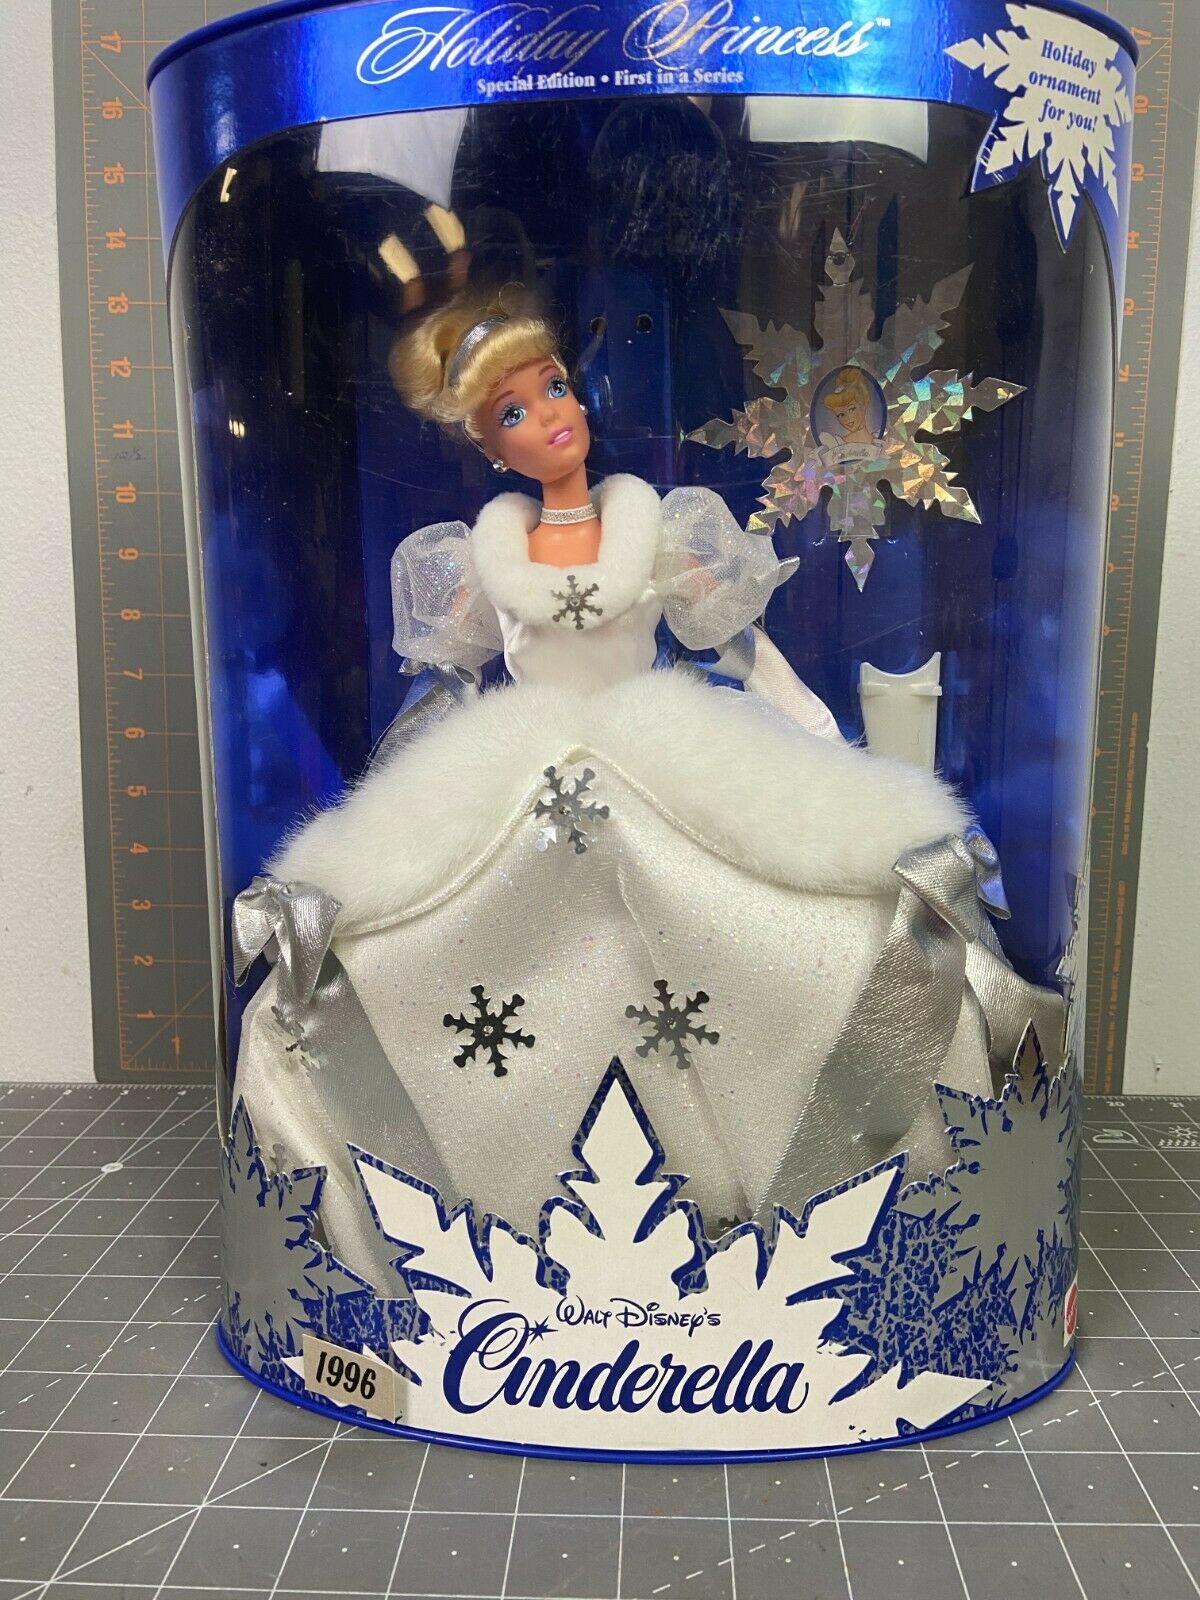 1996 Holiday Princess Special Edition Cinderella #16090 Open Complete